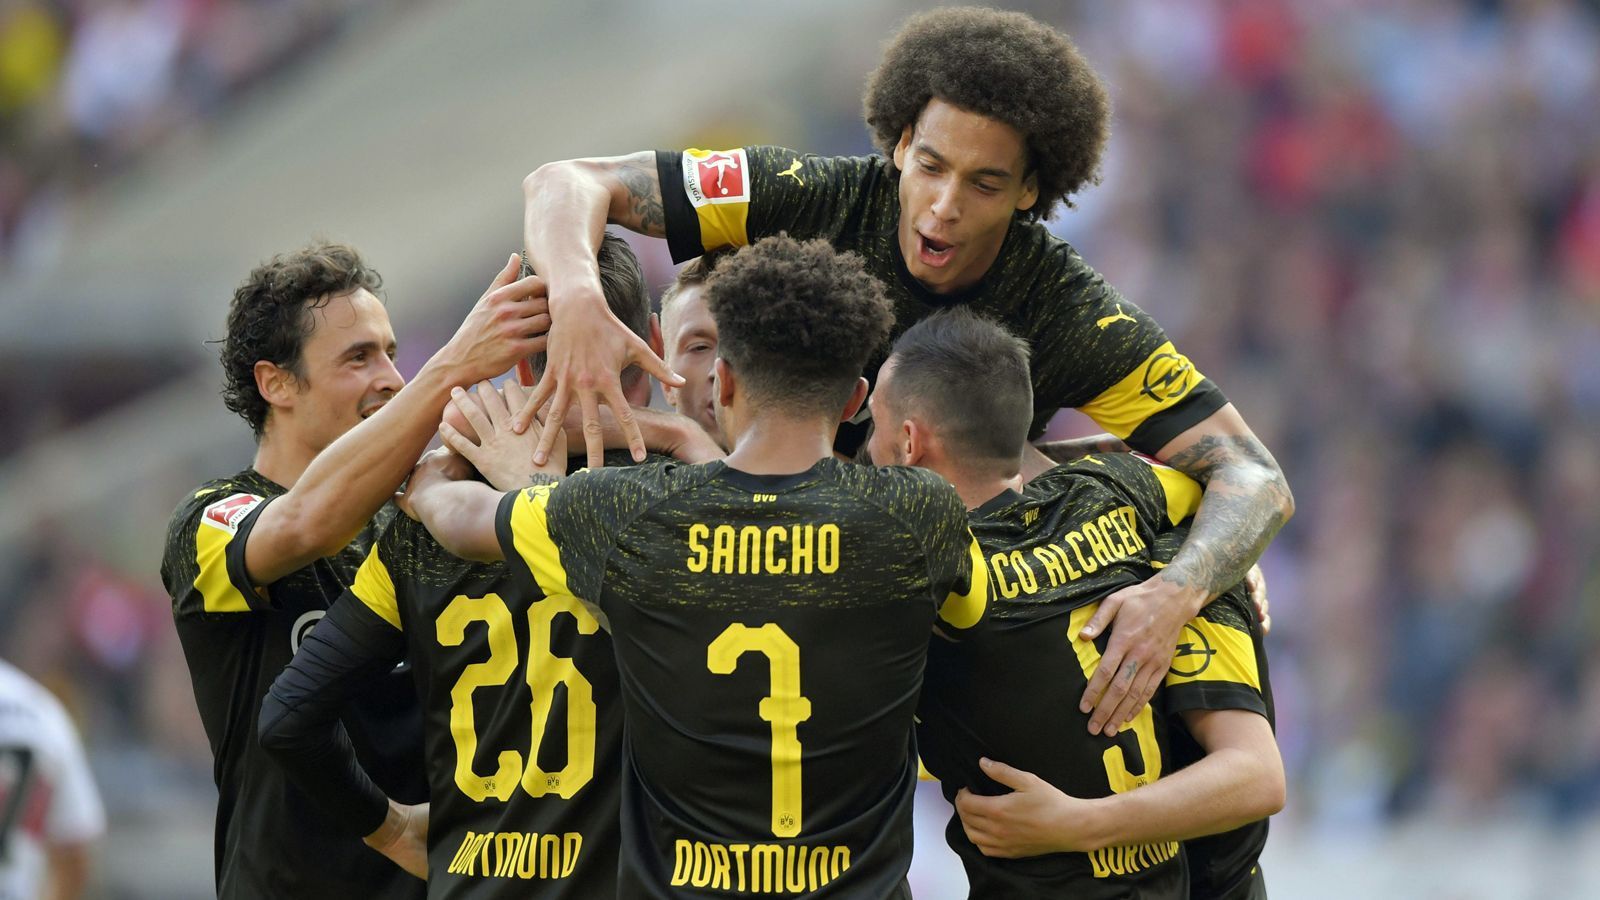 
                <strong>Borussia Dortmund (Deutschland)</strong><br>
                Serienmeister Bayern München schwächelt und zumindest zum Saisonstart scheint nun mit Borussia Dortmund eine Mannschaft da zu sein, die dies zu nutzen weiß. Der BVB liegt unter der Führung von Neu-Coach Lucien Favre nach acht Spielen mit 20 Punkten an der Tabellenspitze und ist als einziges Bundesliga-Team in der Saison 2018/2019 noch ungeschlagen (sechs Siege, zwei Unentschieden). Zuletzt feierte Borussia Dortmund vier Siege in Serie und erzielte dabei sagenhafte 19 Tore! Besonders beachtlich: Die bisherigen 27 Saisontore des BVB verteilen sich auf 14 verschiedene Spieler, was für eine extreme Flexibilität im Kader des Tabellenführers spricht.
              